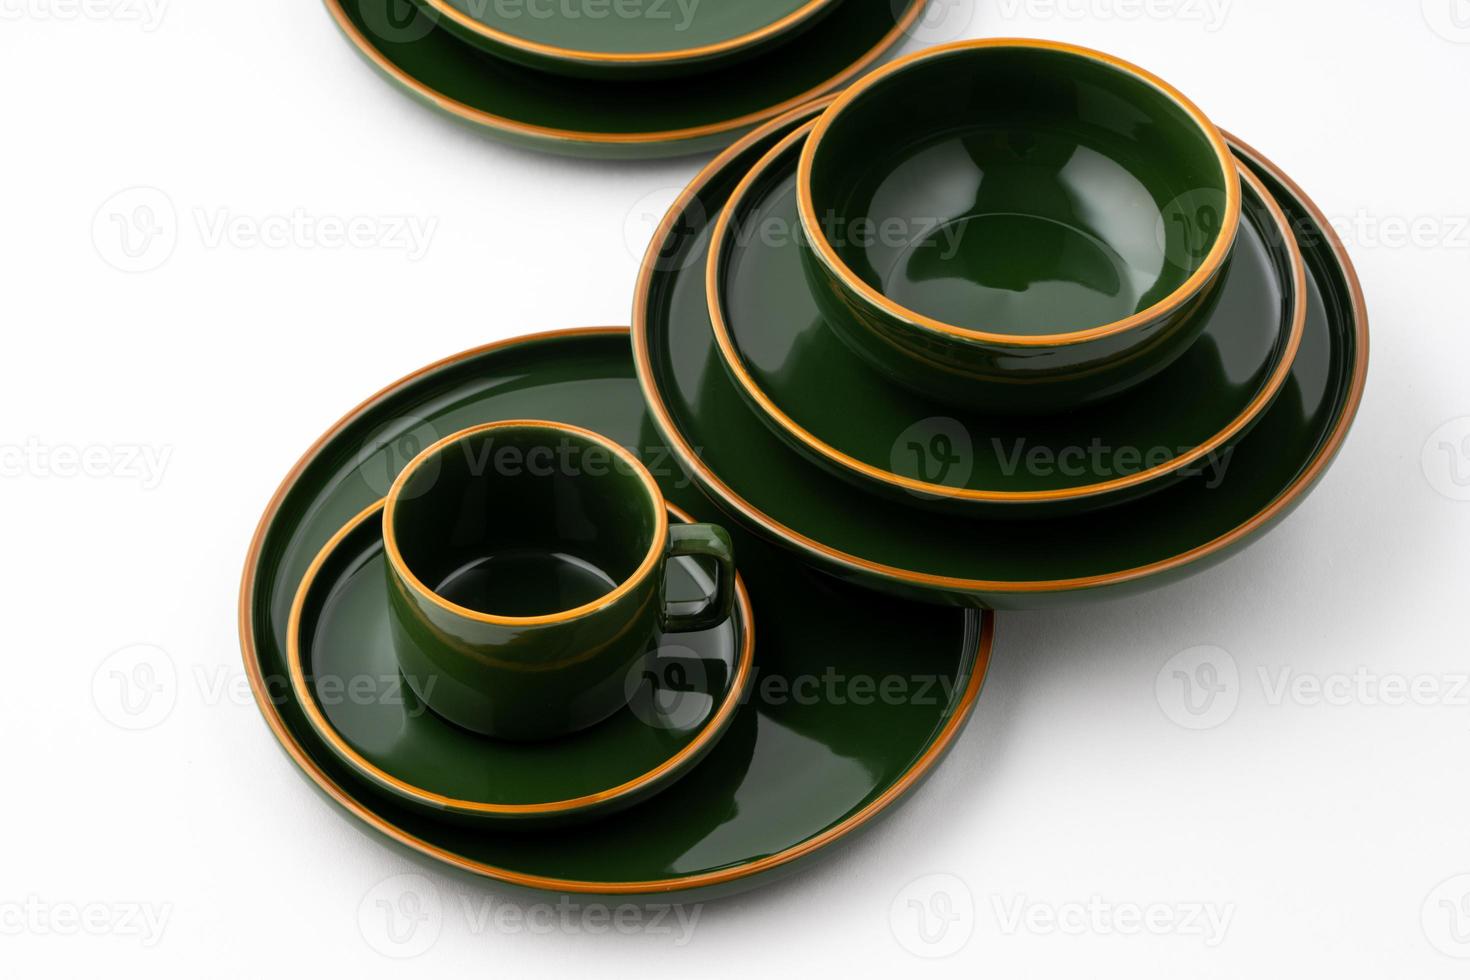 un ensemble de vaisselle en céramique vert foncé avec des contours orange photo